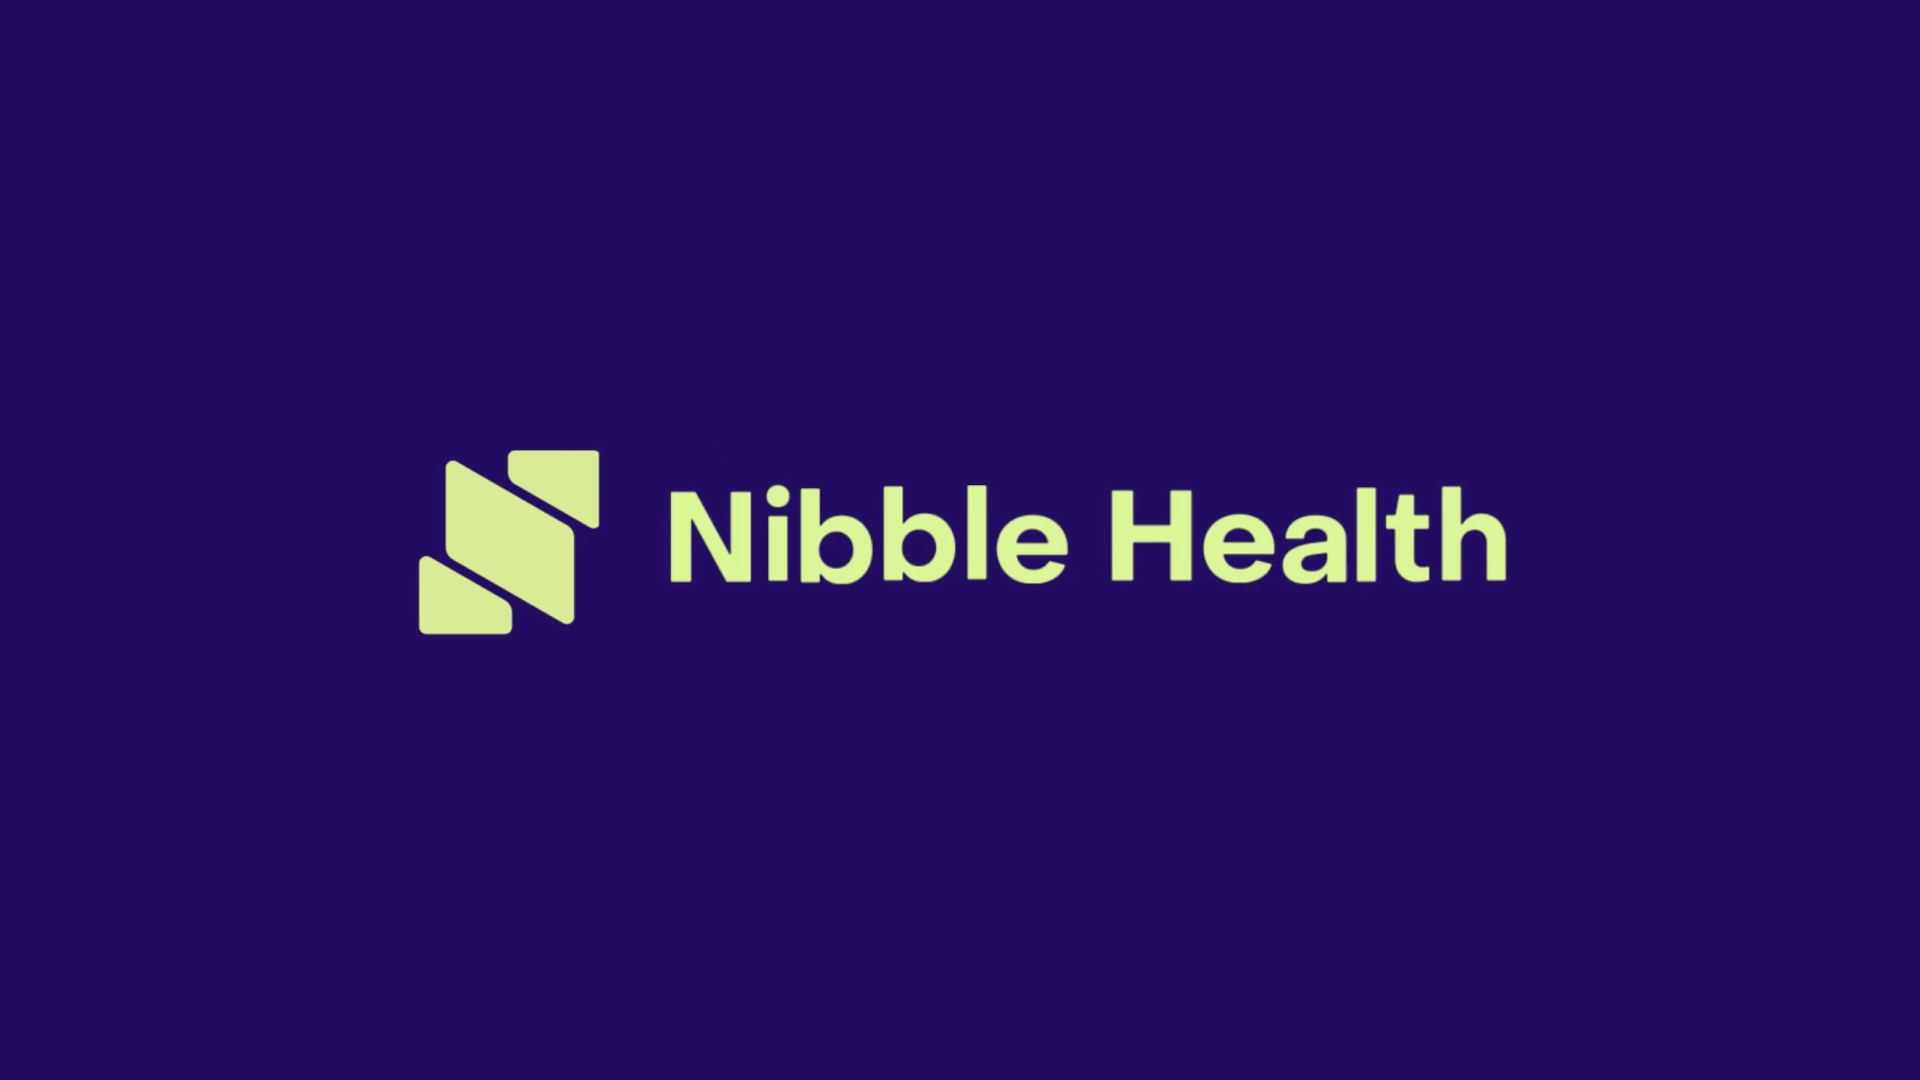 nibble health logo design